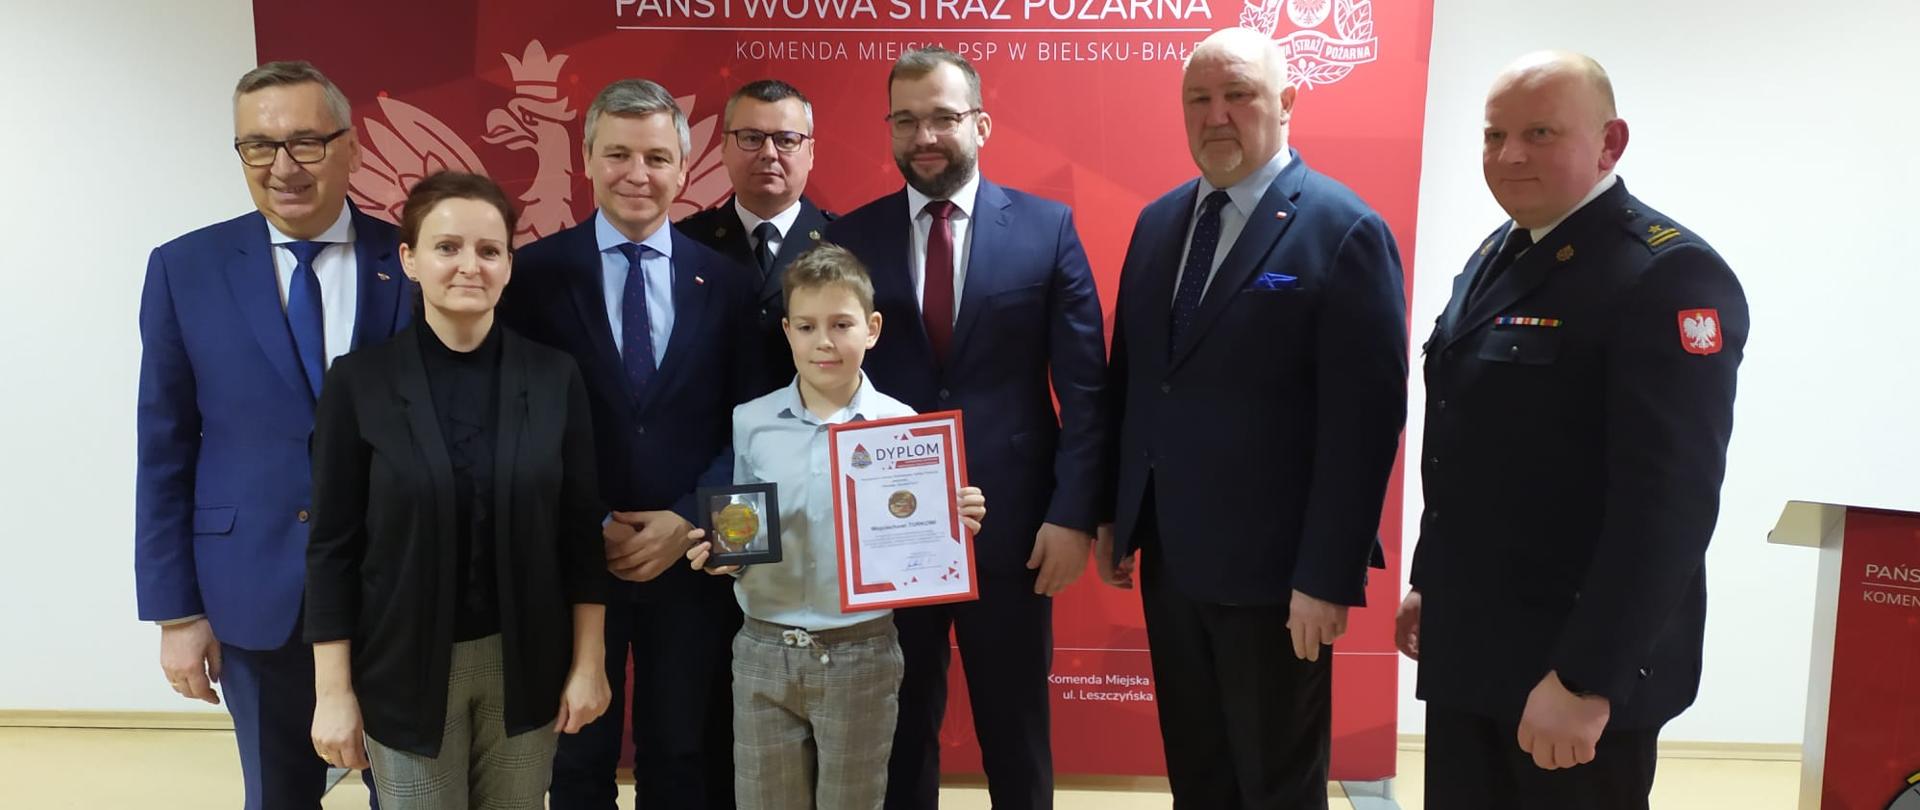 Odznaka „Iuvenis Forti” dla 10 - letniego Wojtka z Czechowic - Dziedzic 